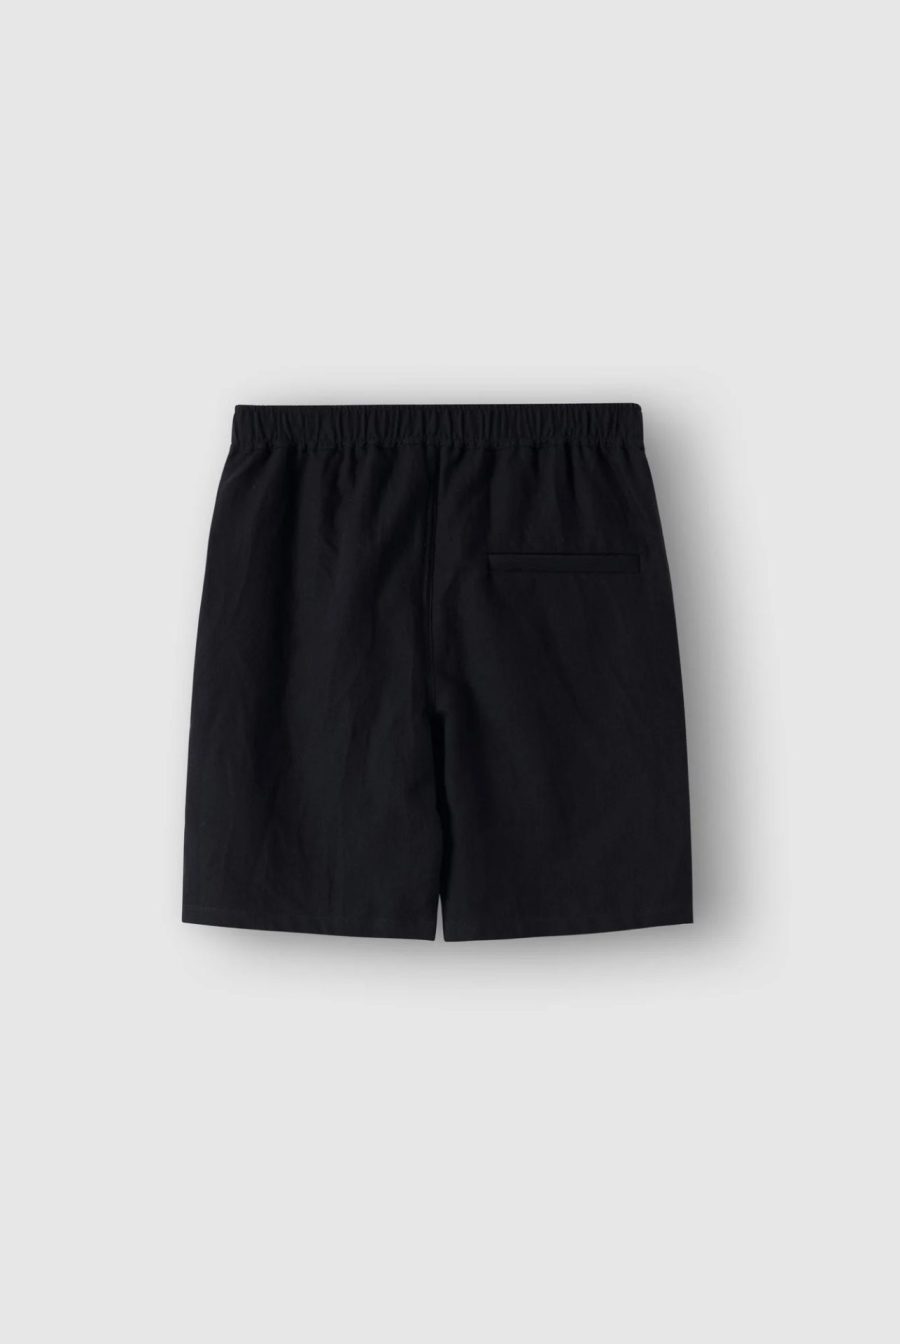 bandsome denim shorts black